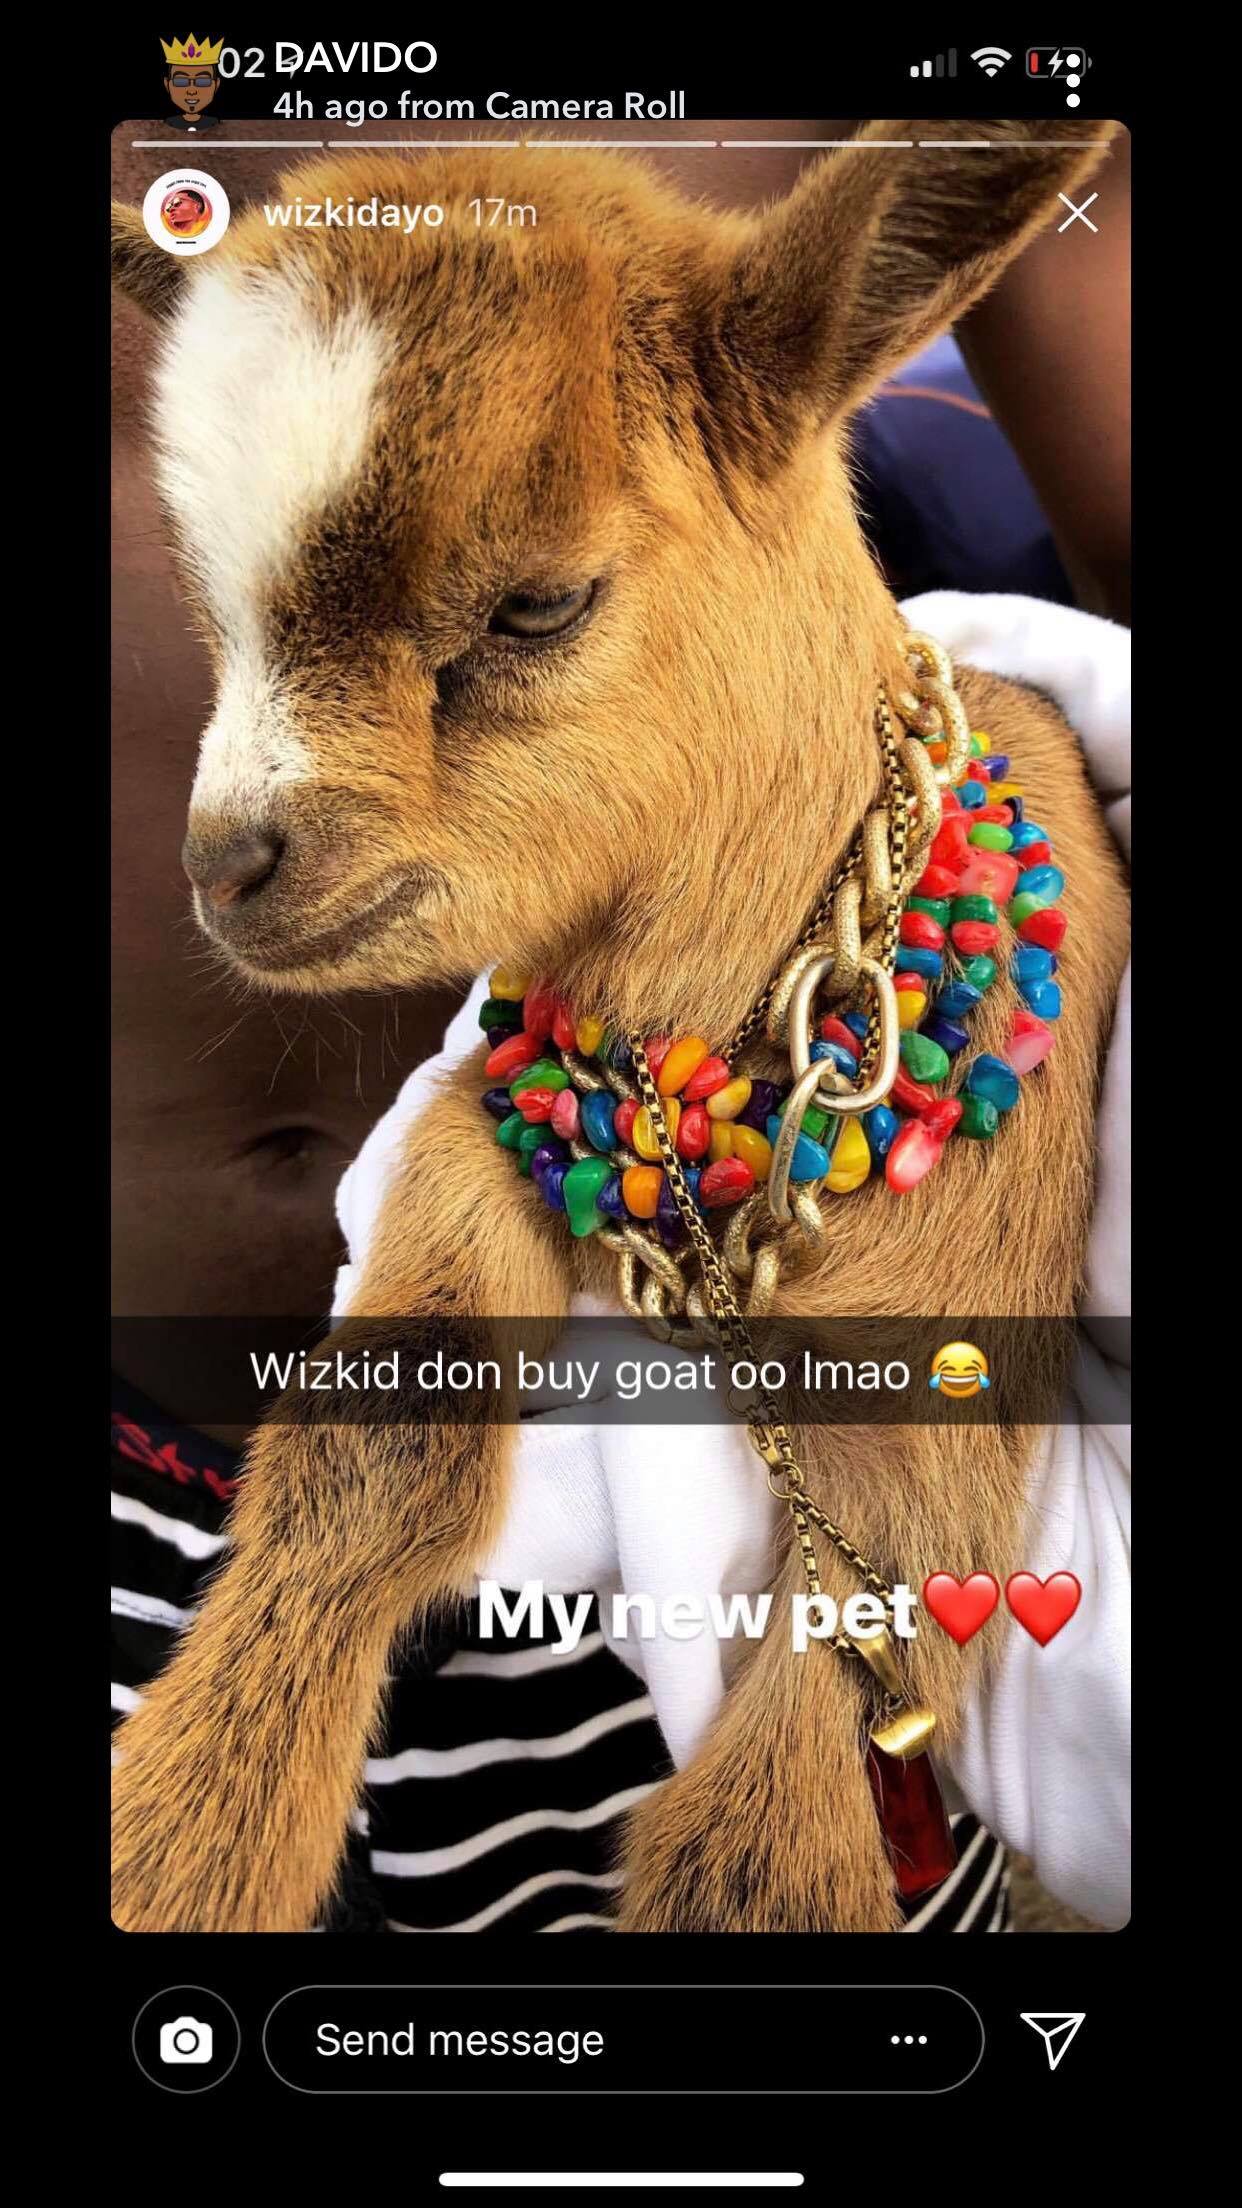 Wizkid's new pet goat